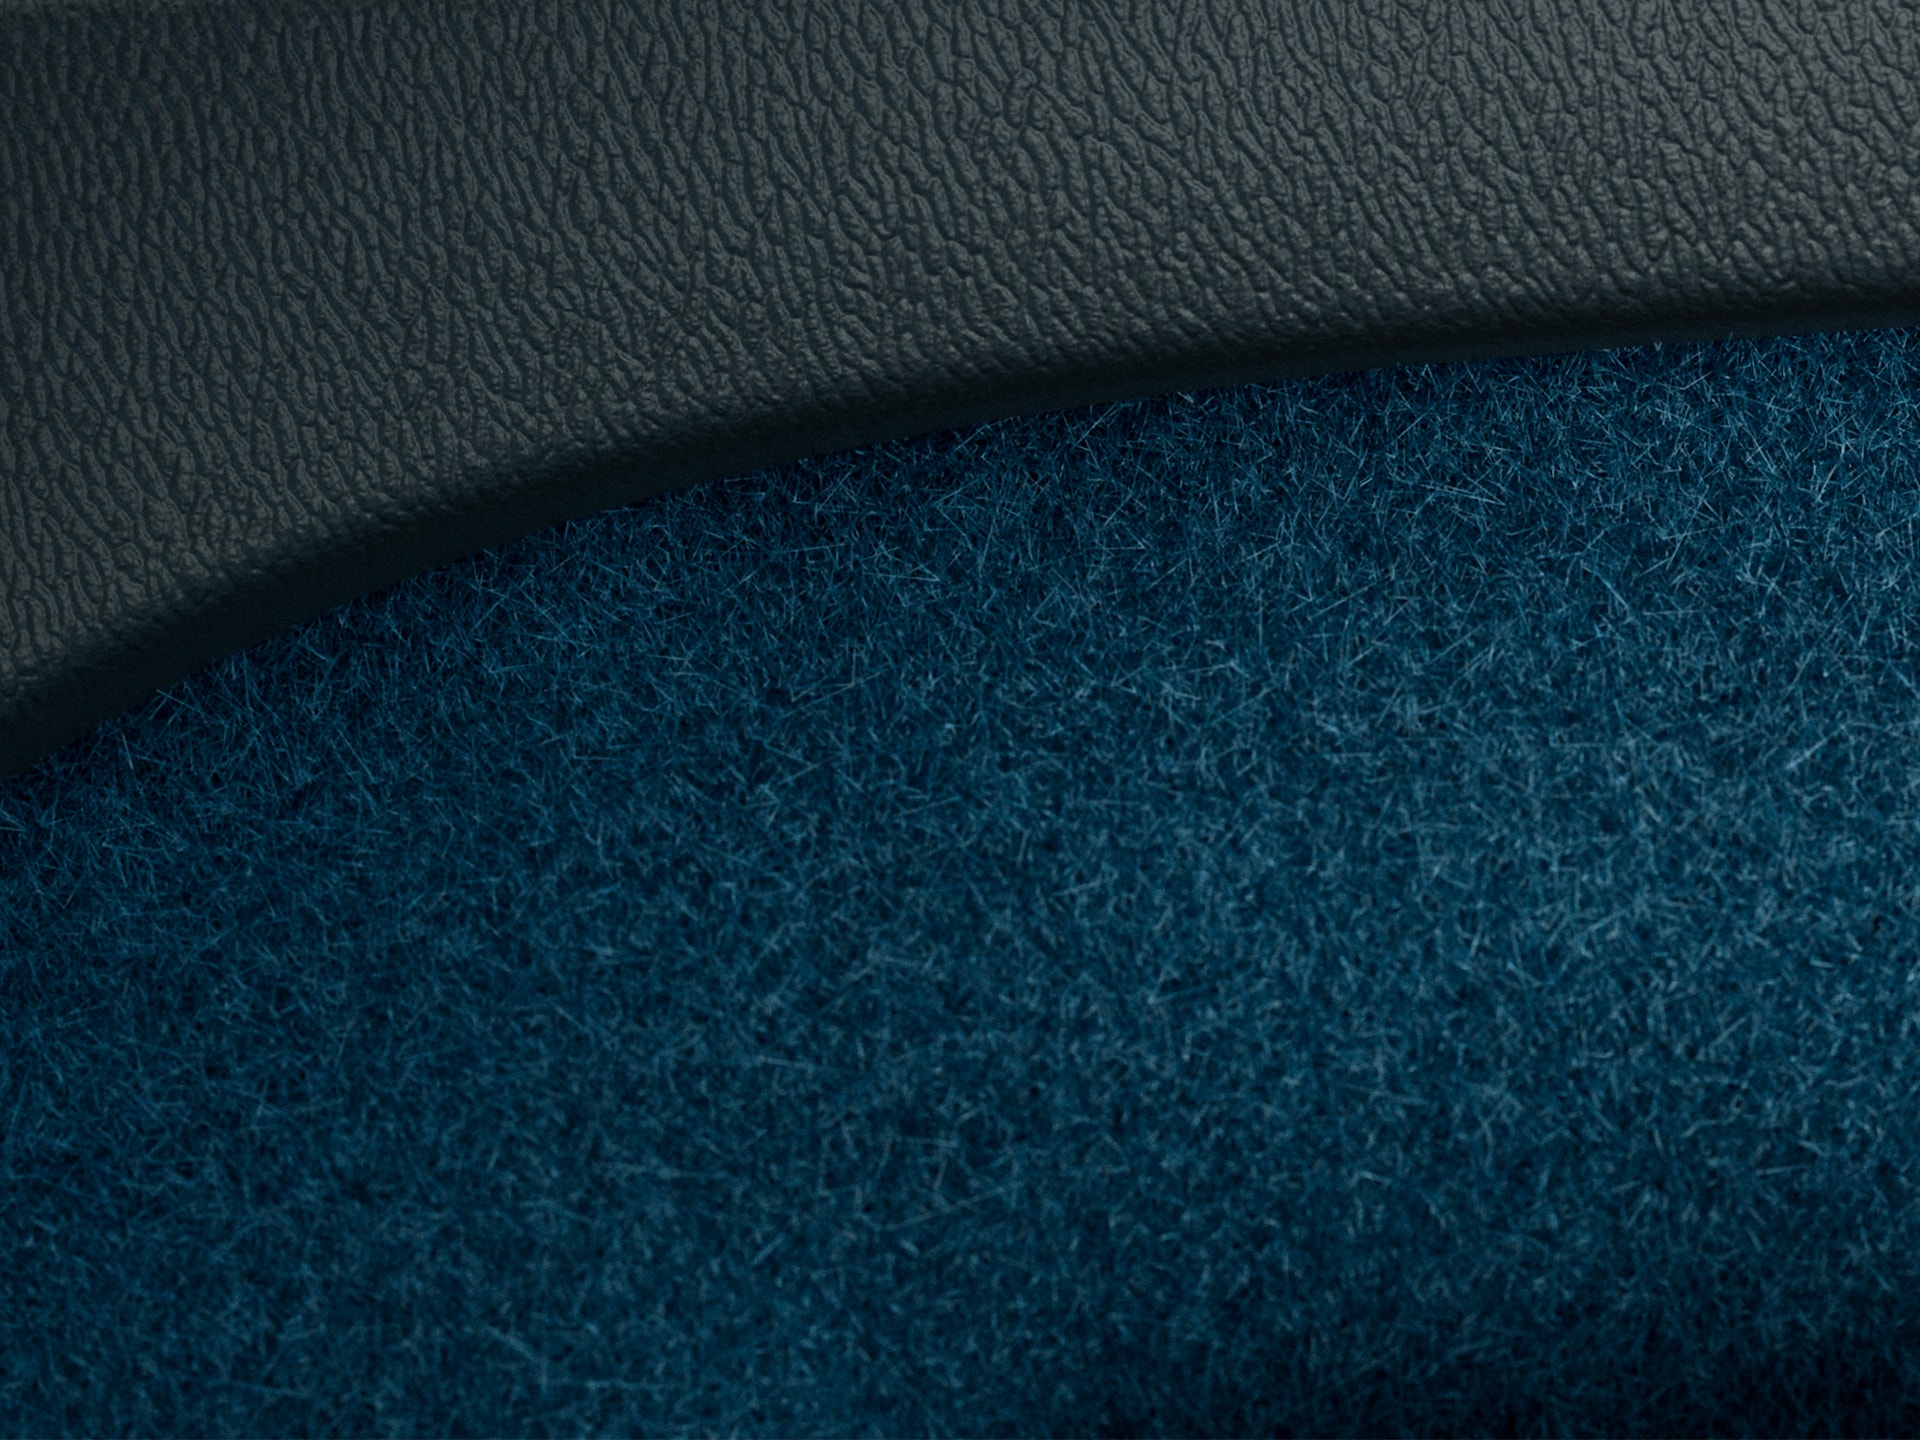 Alfombras azul fiordo, parcialmente recicladas, en un Volvo XC40 Recharge híbrido enchufable.